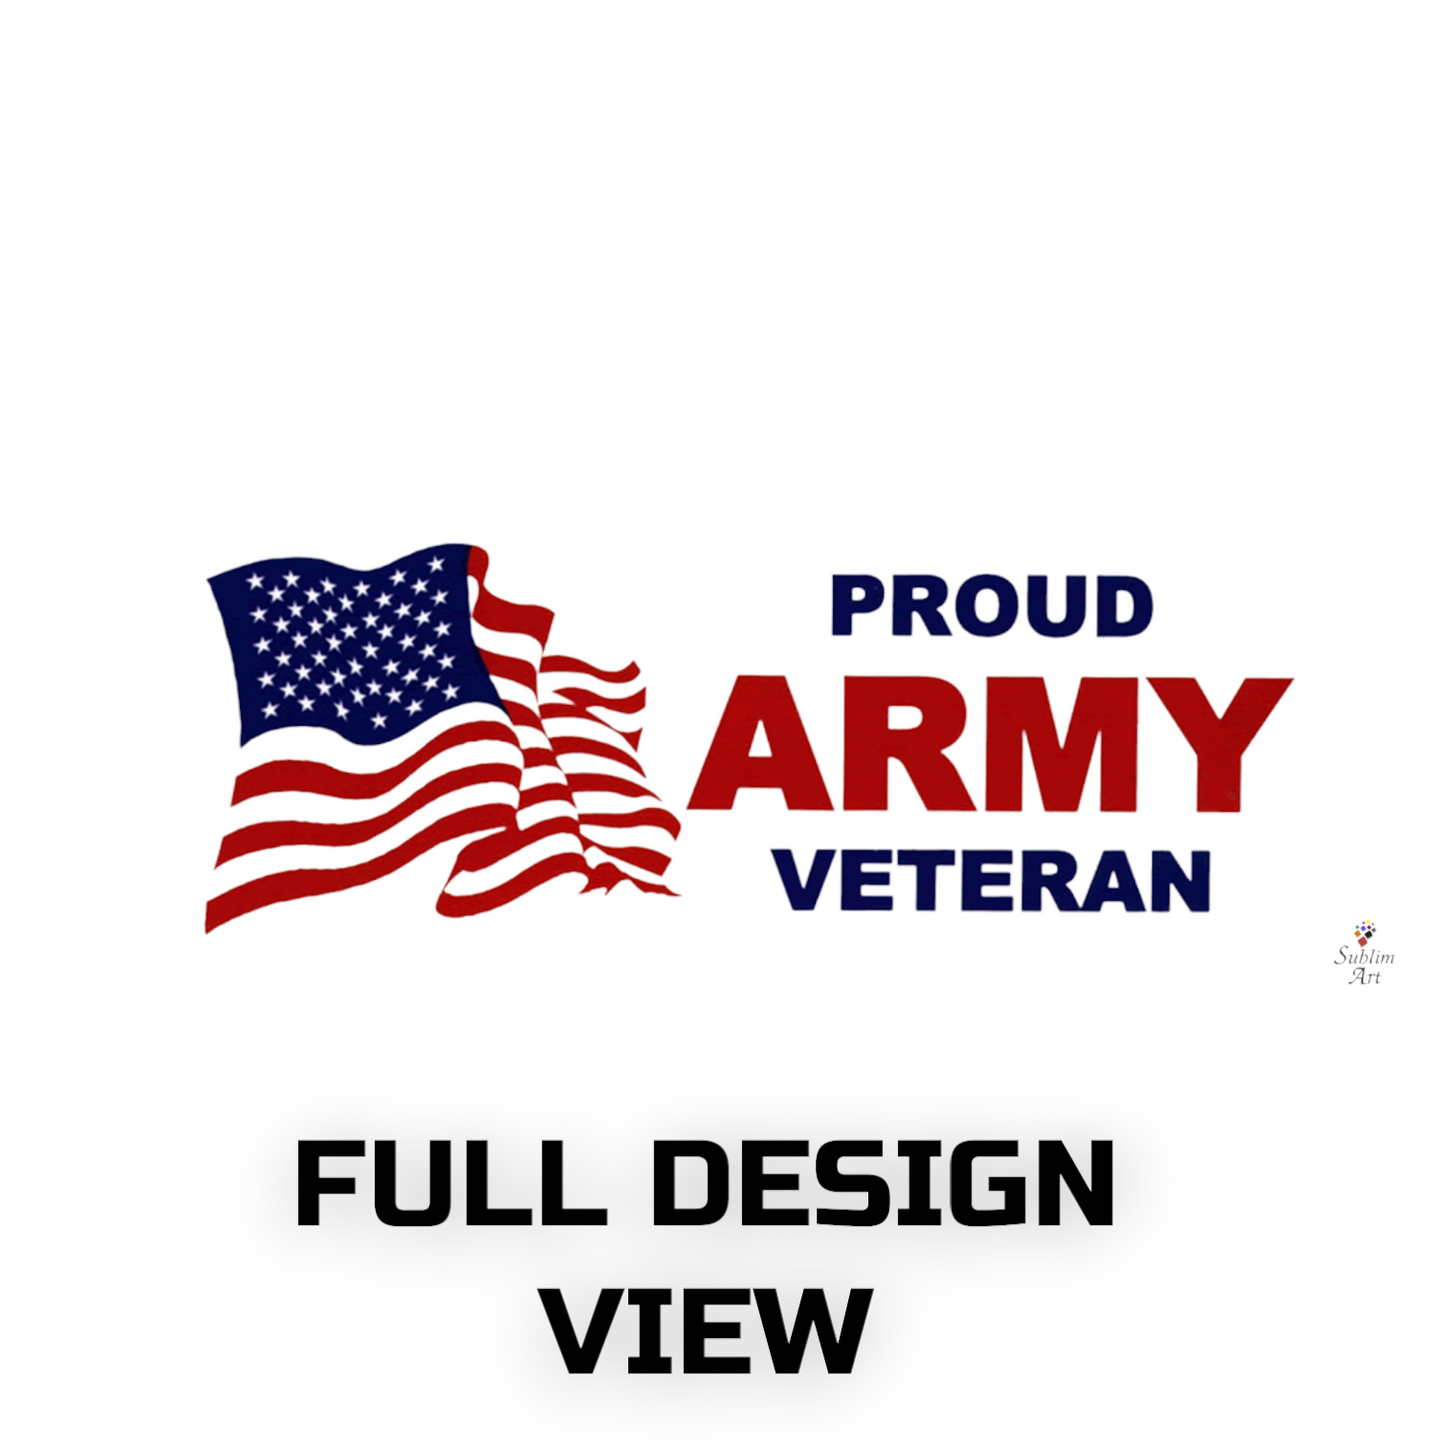 SUBLIMART: Veteran - Mug 'Proud Army Veteran' (Design #25)